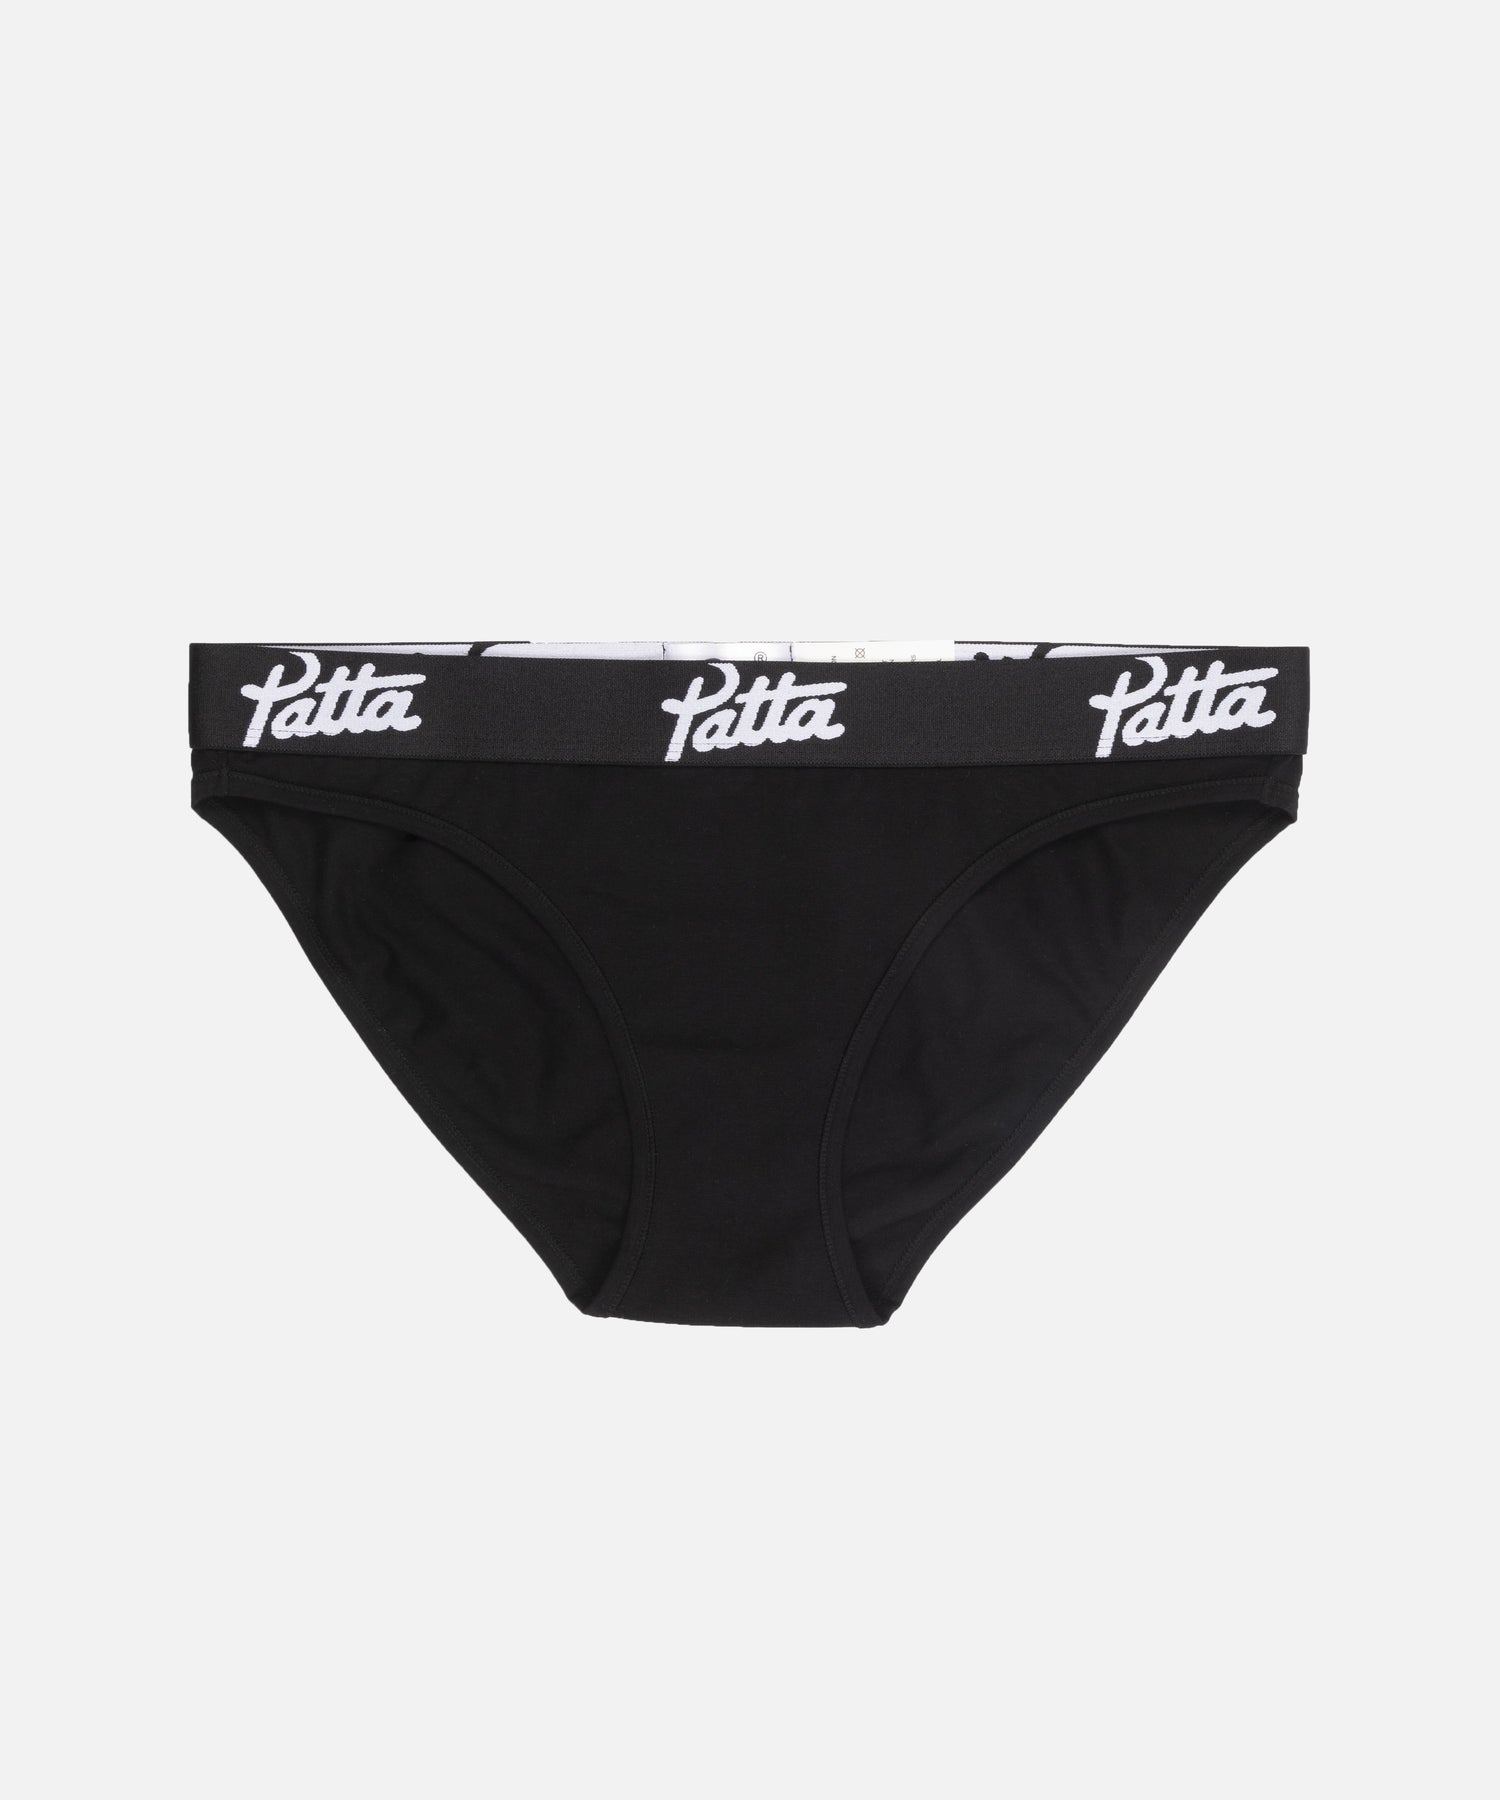 Patta Underwear Boxer Briefs 2-Pack